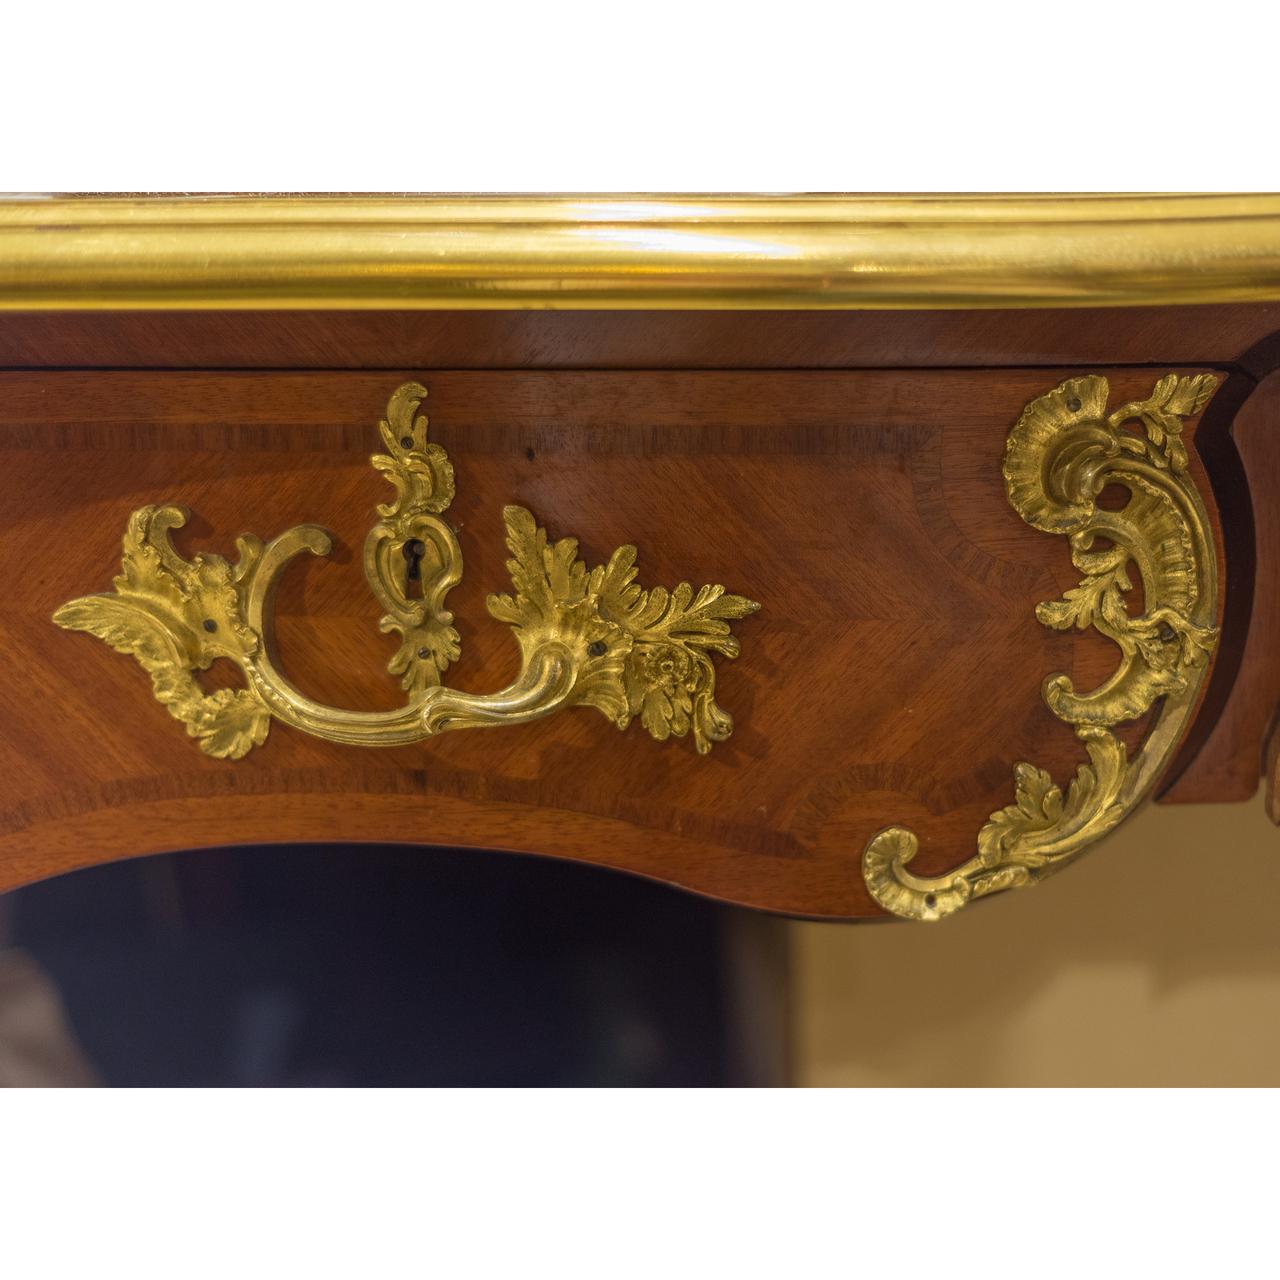 Un fabuleux bureau de qualité du 19ème siècle monté en bronze doré par la Maison Krieger.
Plateau serpentin avec écritoire en cuir brun, la frise garnie de trois tiroirs, le revers de faux tiroirs, l'intérieur d'un tiroir avec plaquette gravée